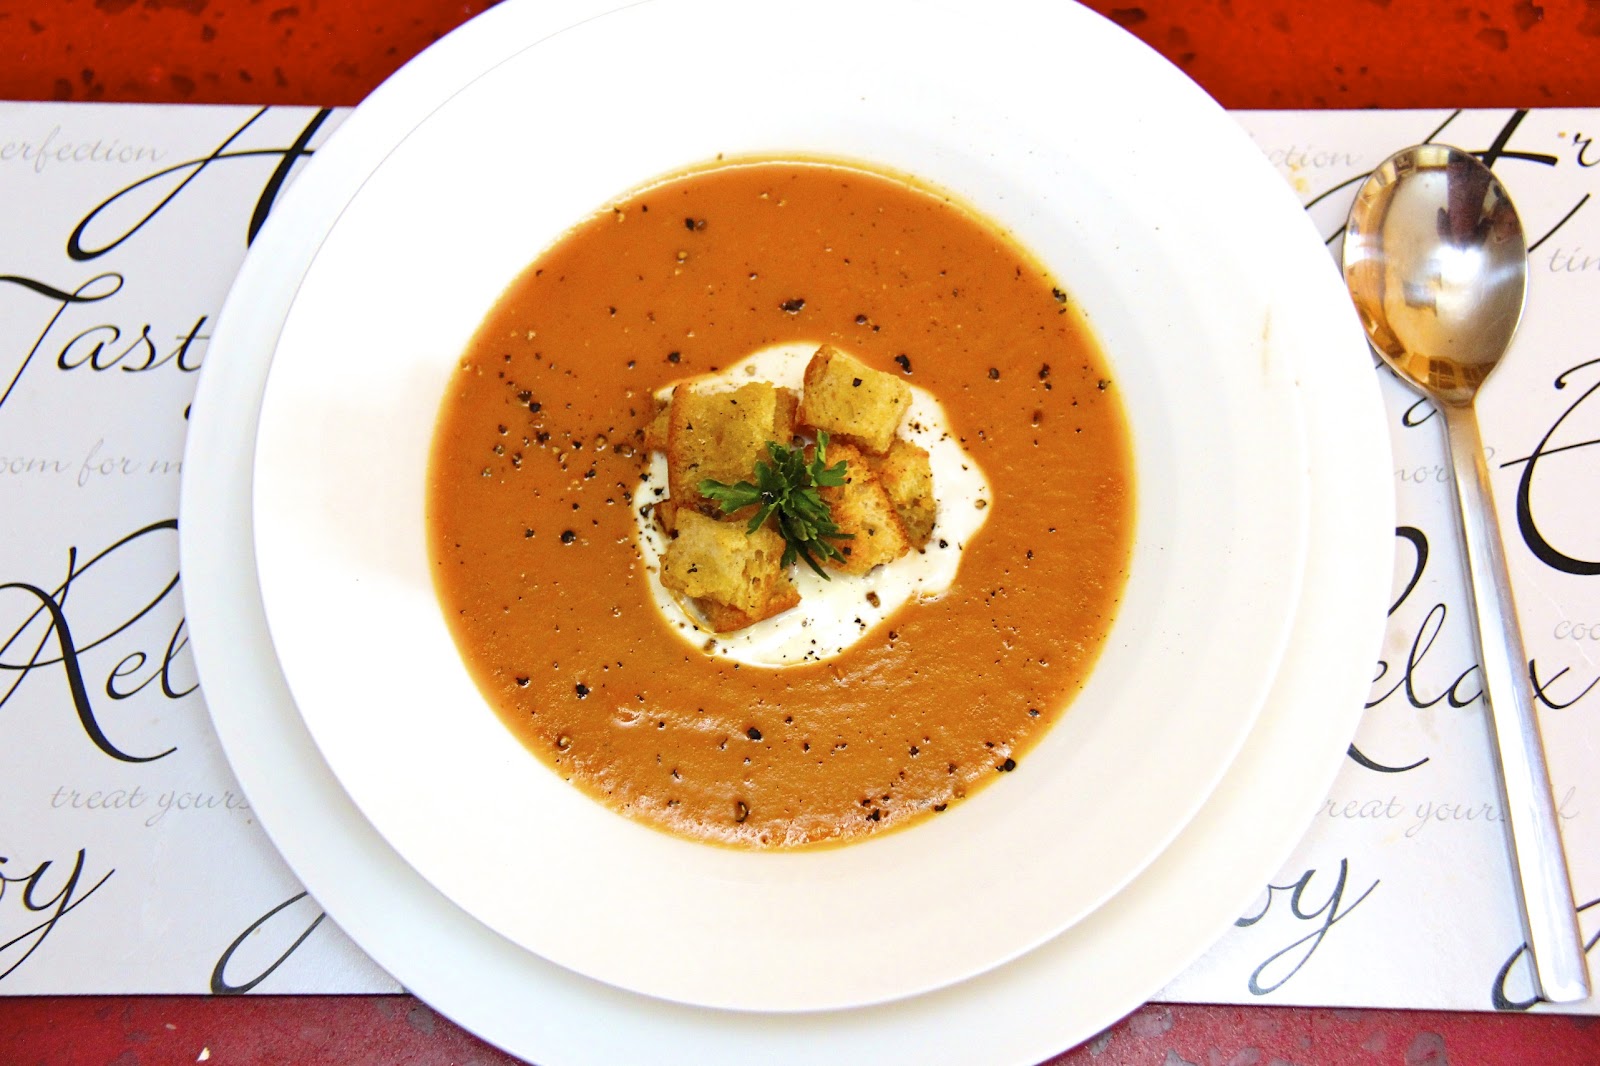 Как едят суп по этикету. Суп с прованскими травами. Гарбюр французский суп. Бийск французский суп. Суп из картофель из ресторана томат.